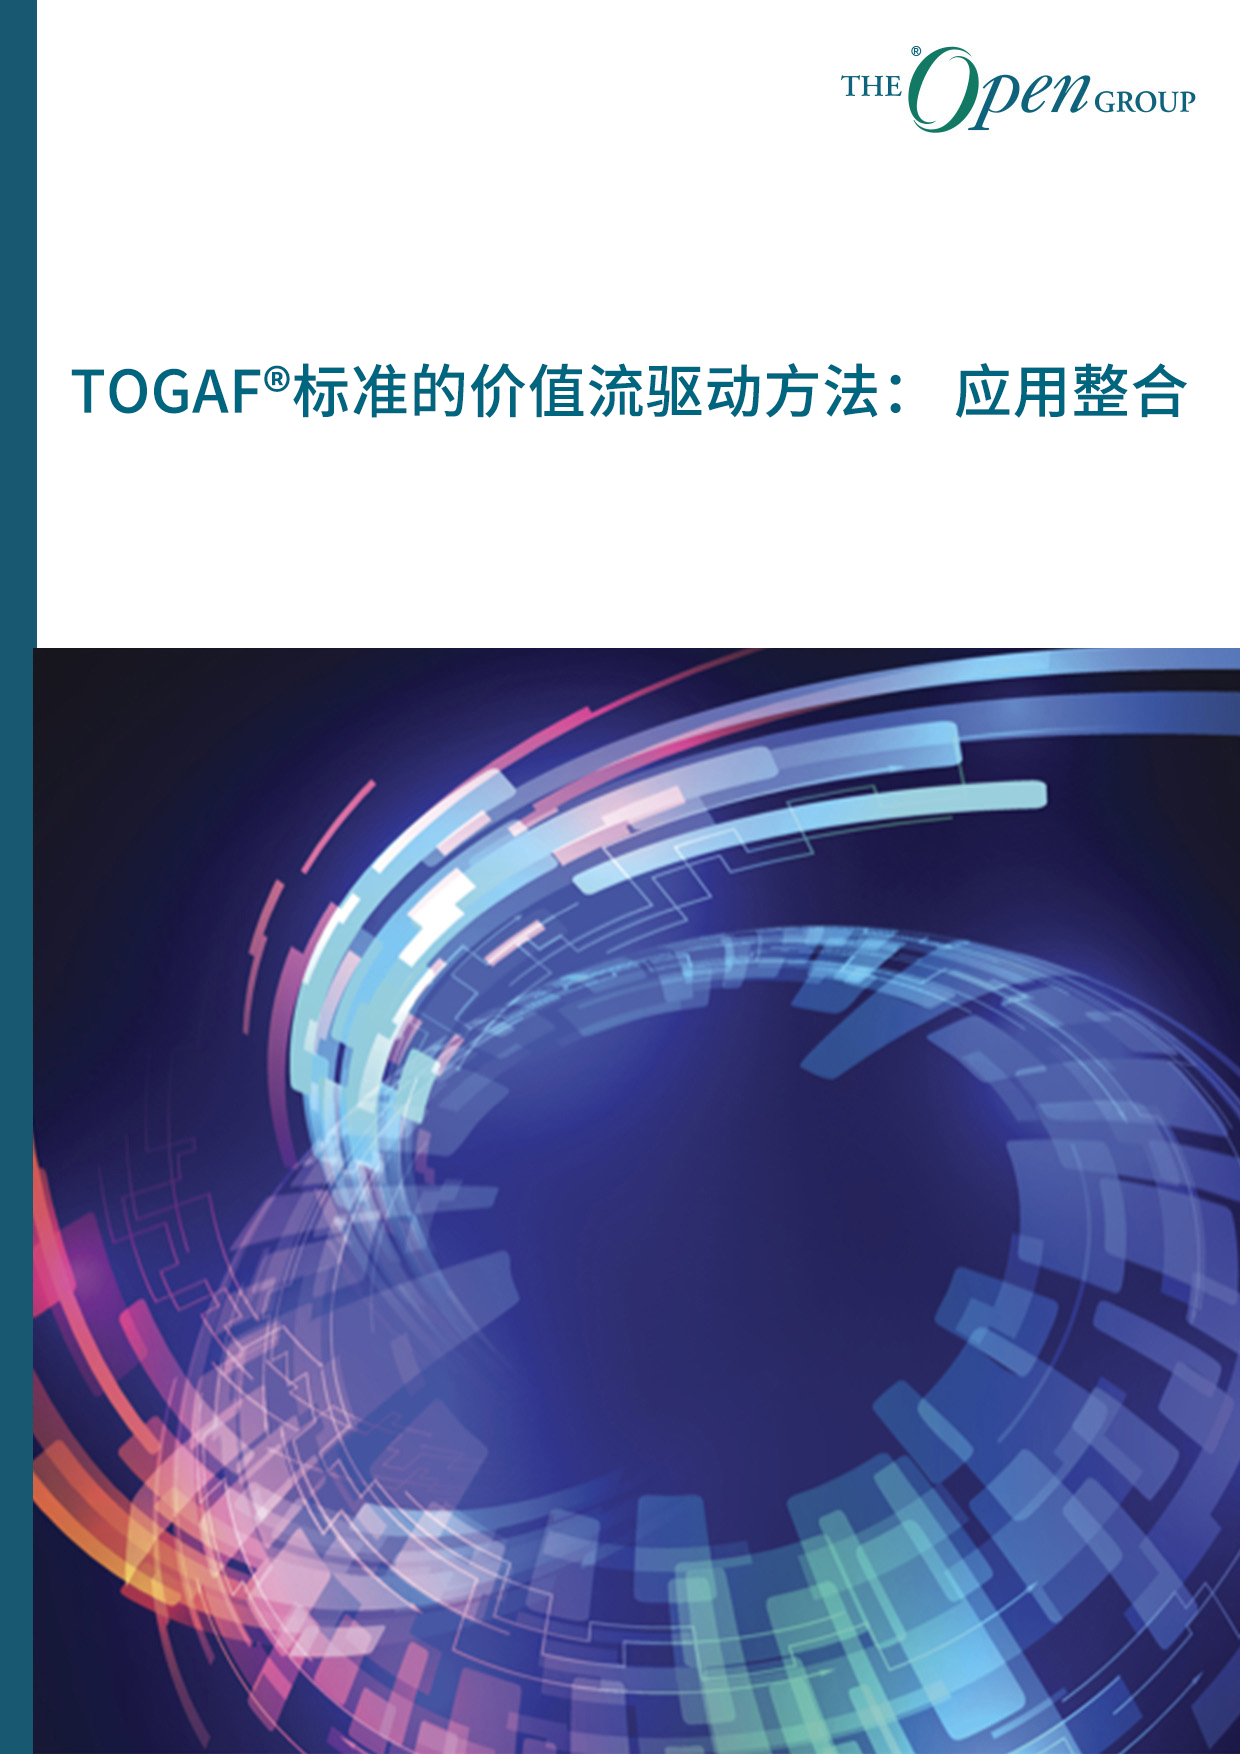 TOGAF®标准的价值流驱动方法： 应用整合